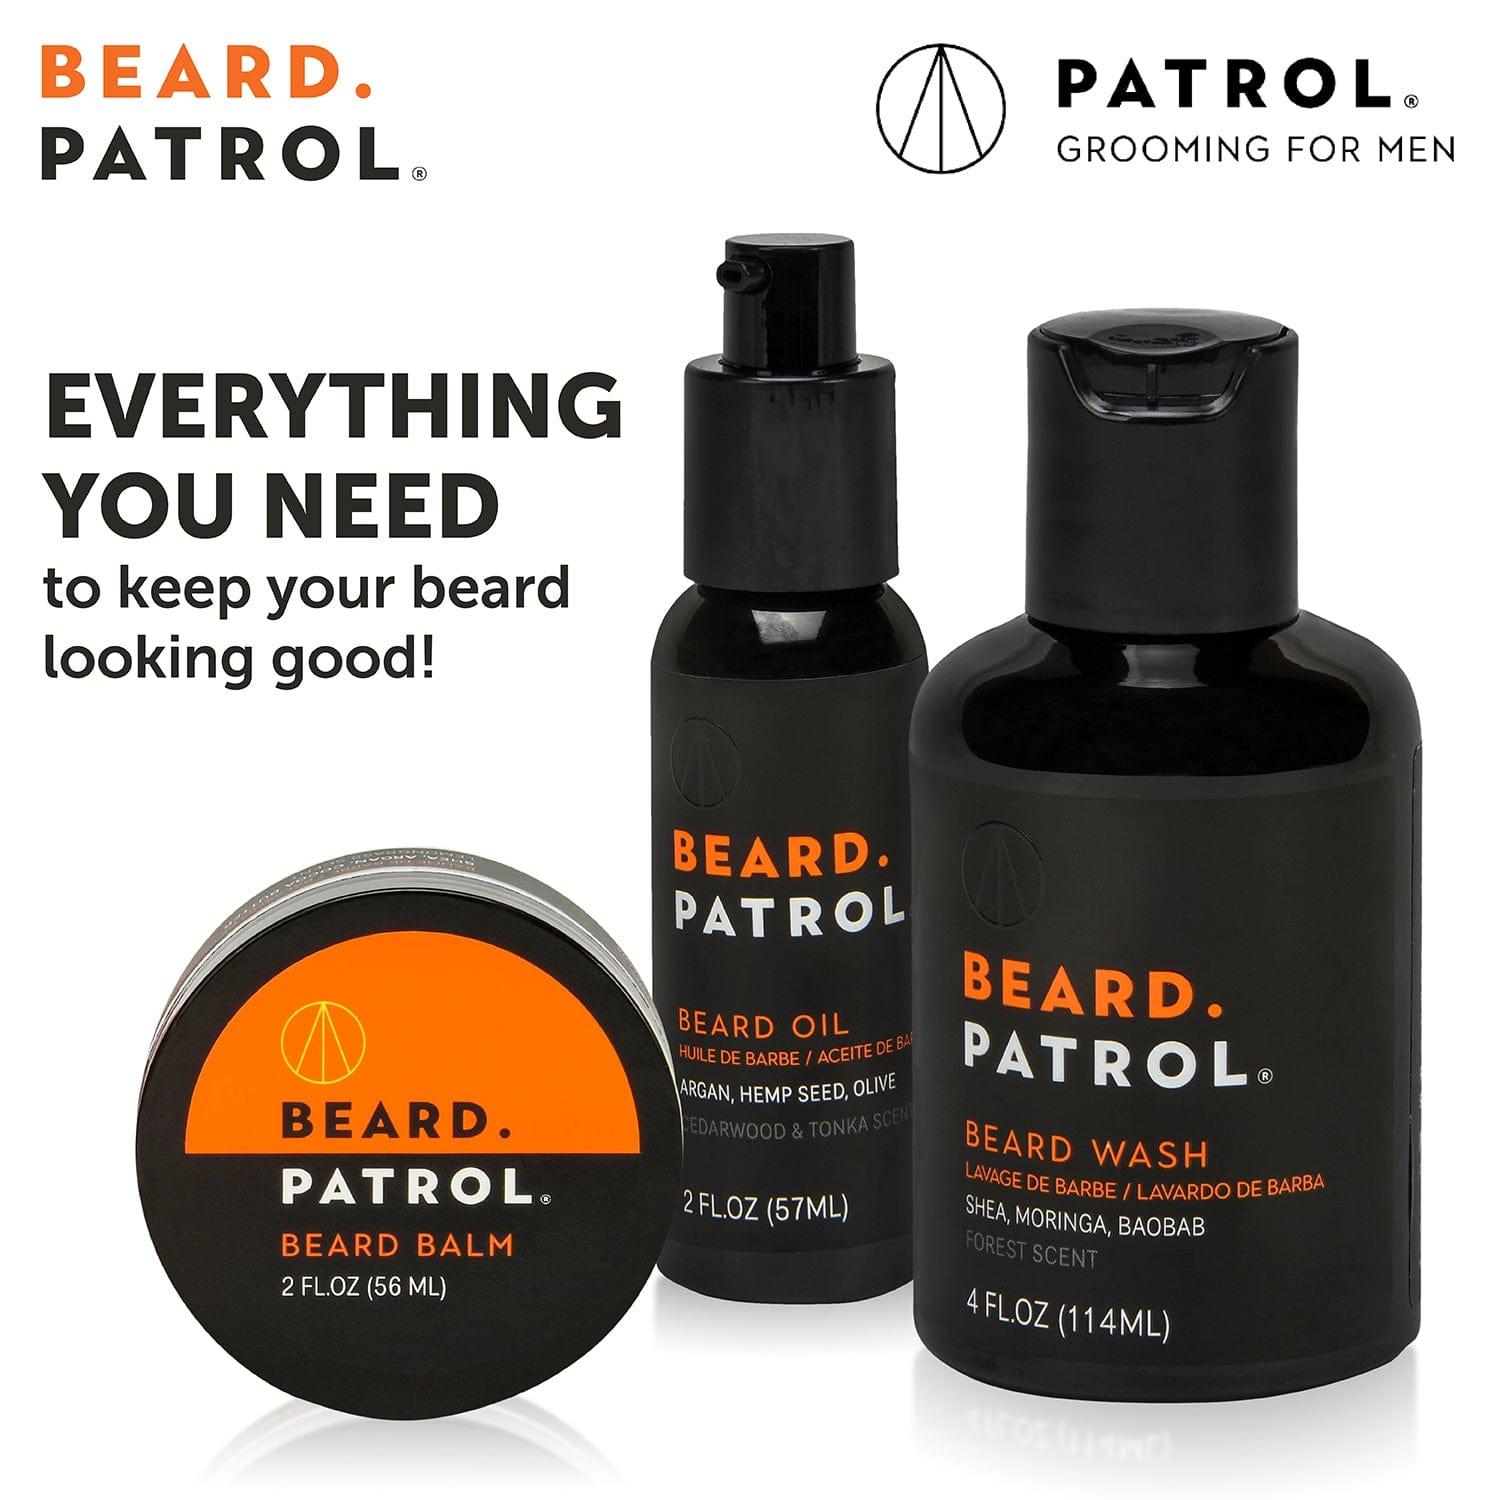 Patrol Grooming beard kit